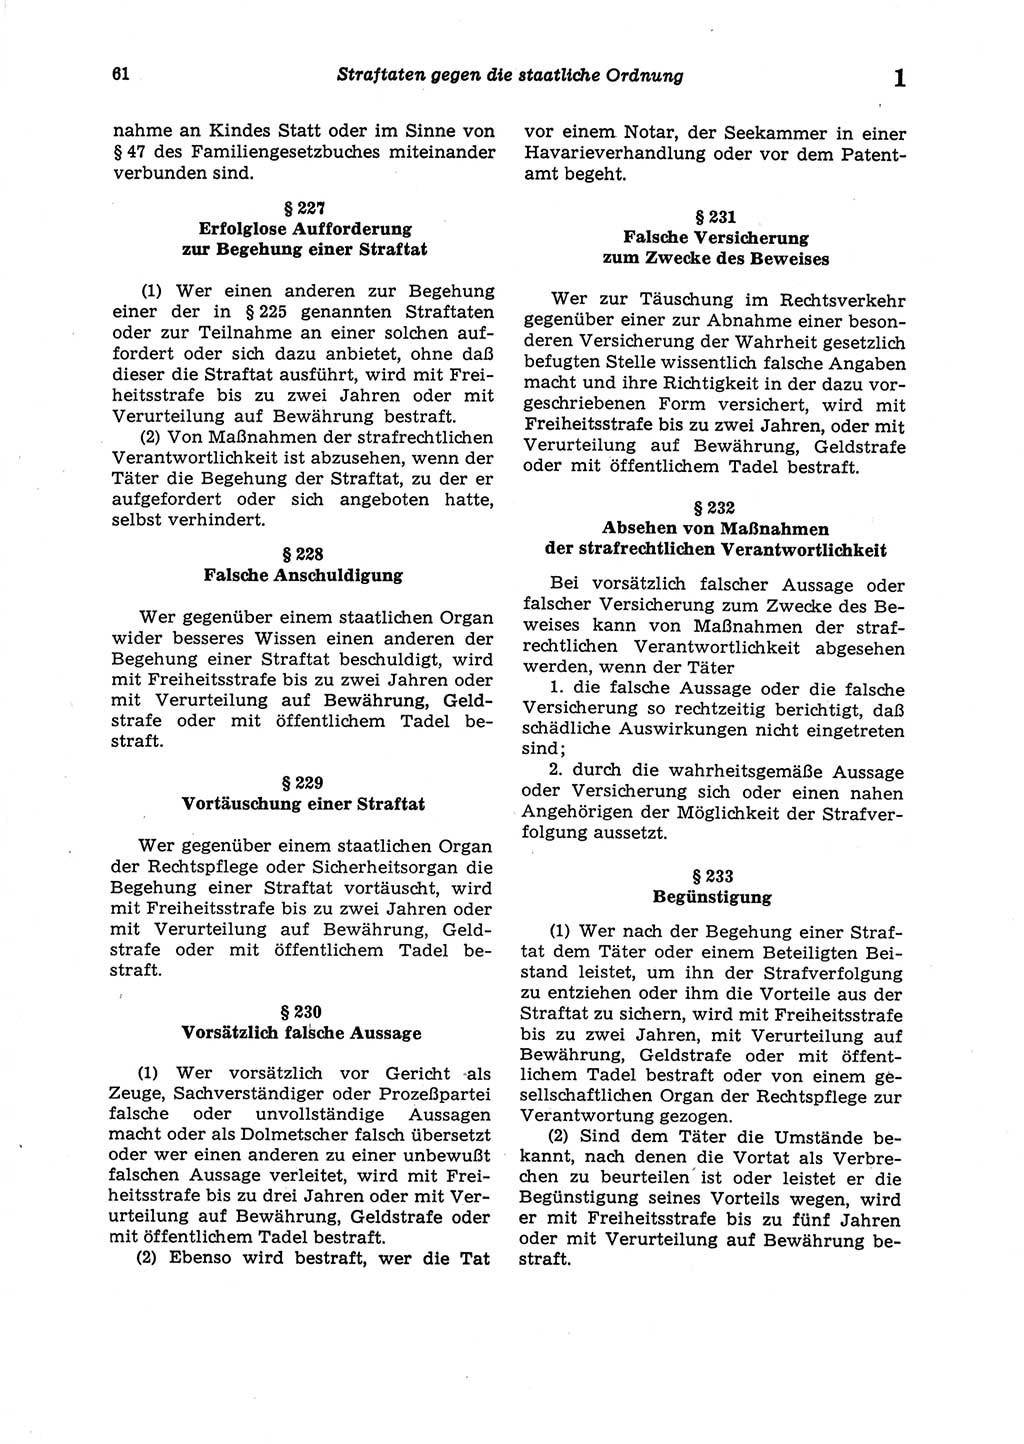 Strafgesetzbuch (StGB) der Deutschen Demokratischen Republik (DDR) 1987, Seite 61 (StGB DDR 1987, S. 61)